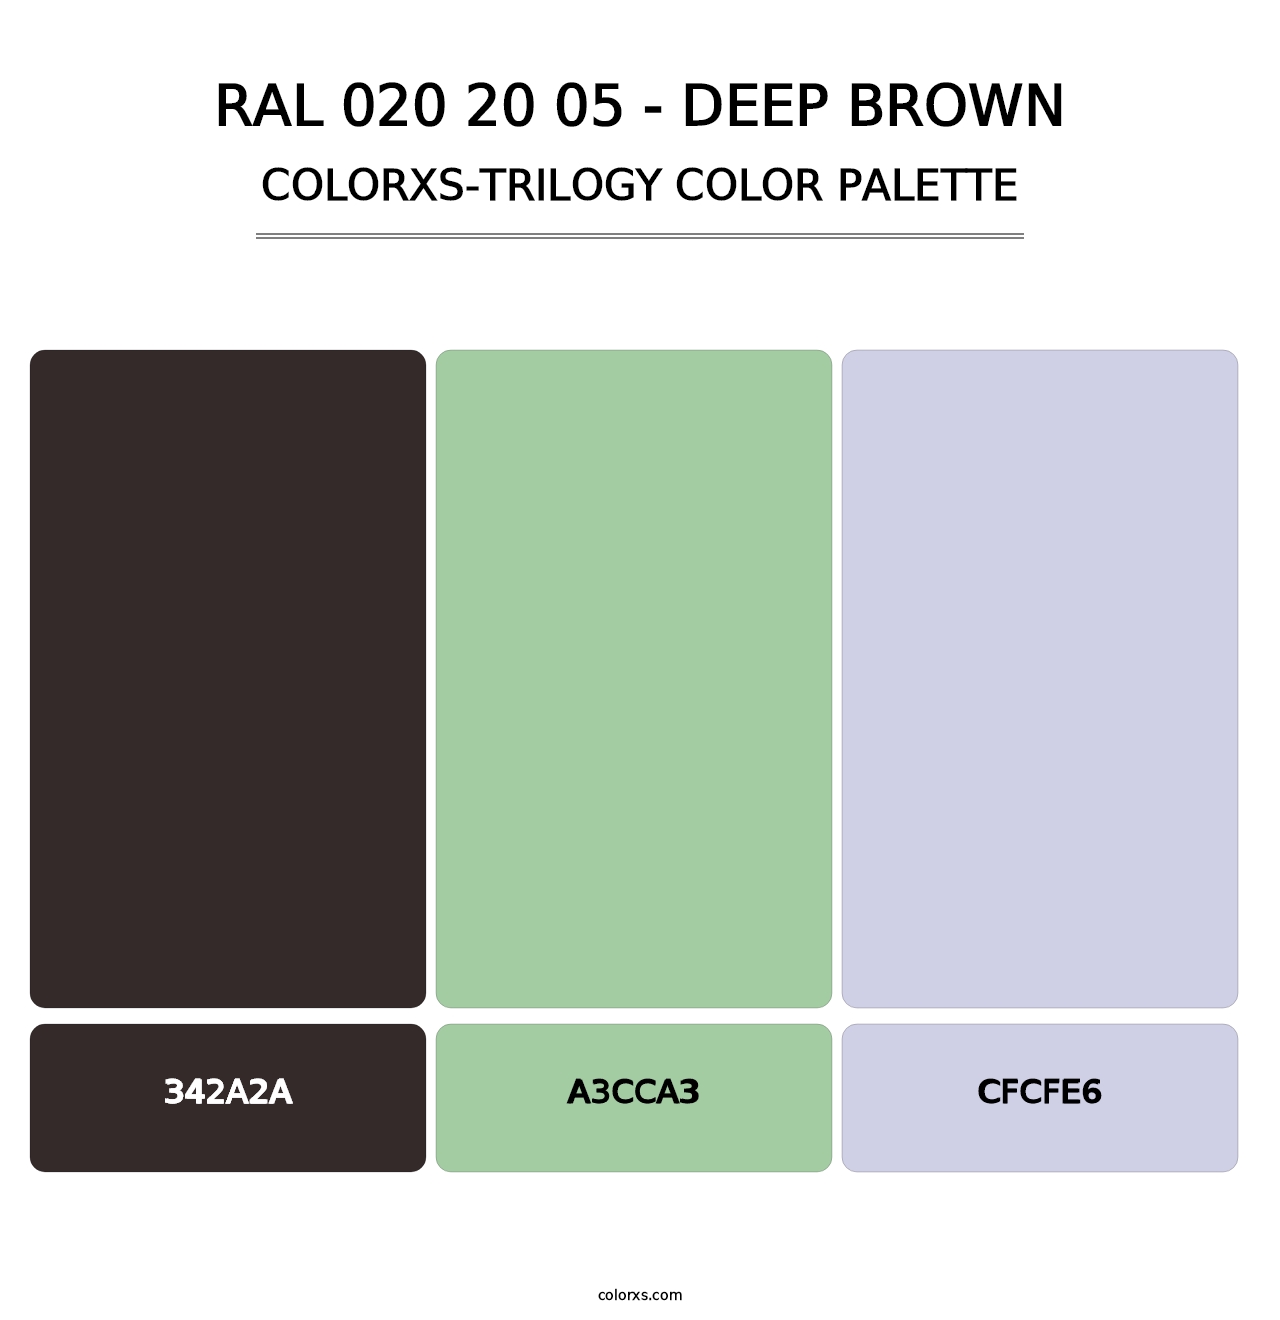 RAL 020 20 05 - Deep Brown - Colorxs Trilogy Palette